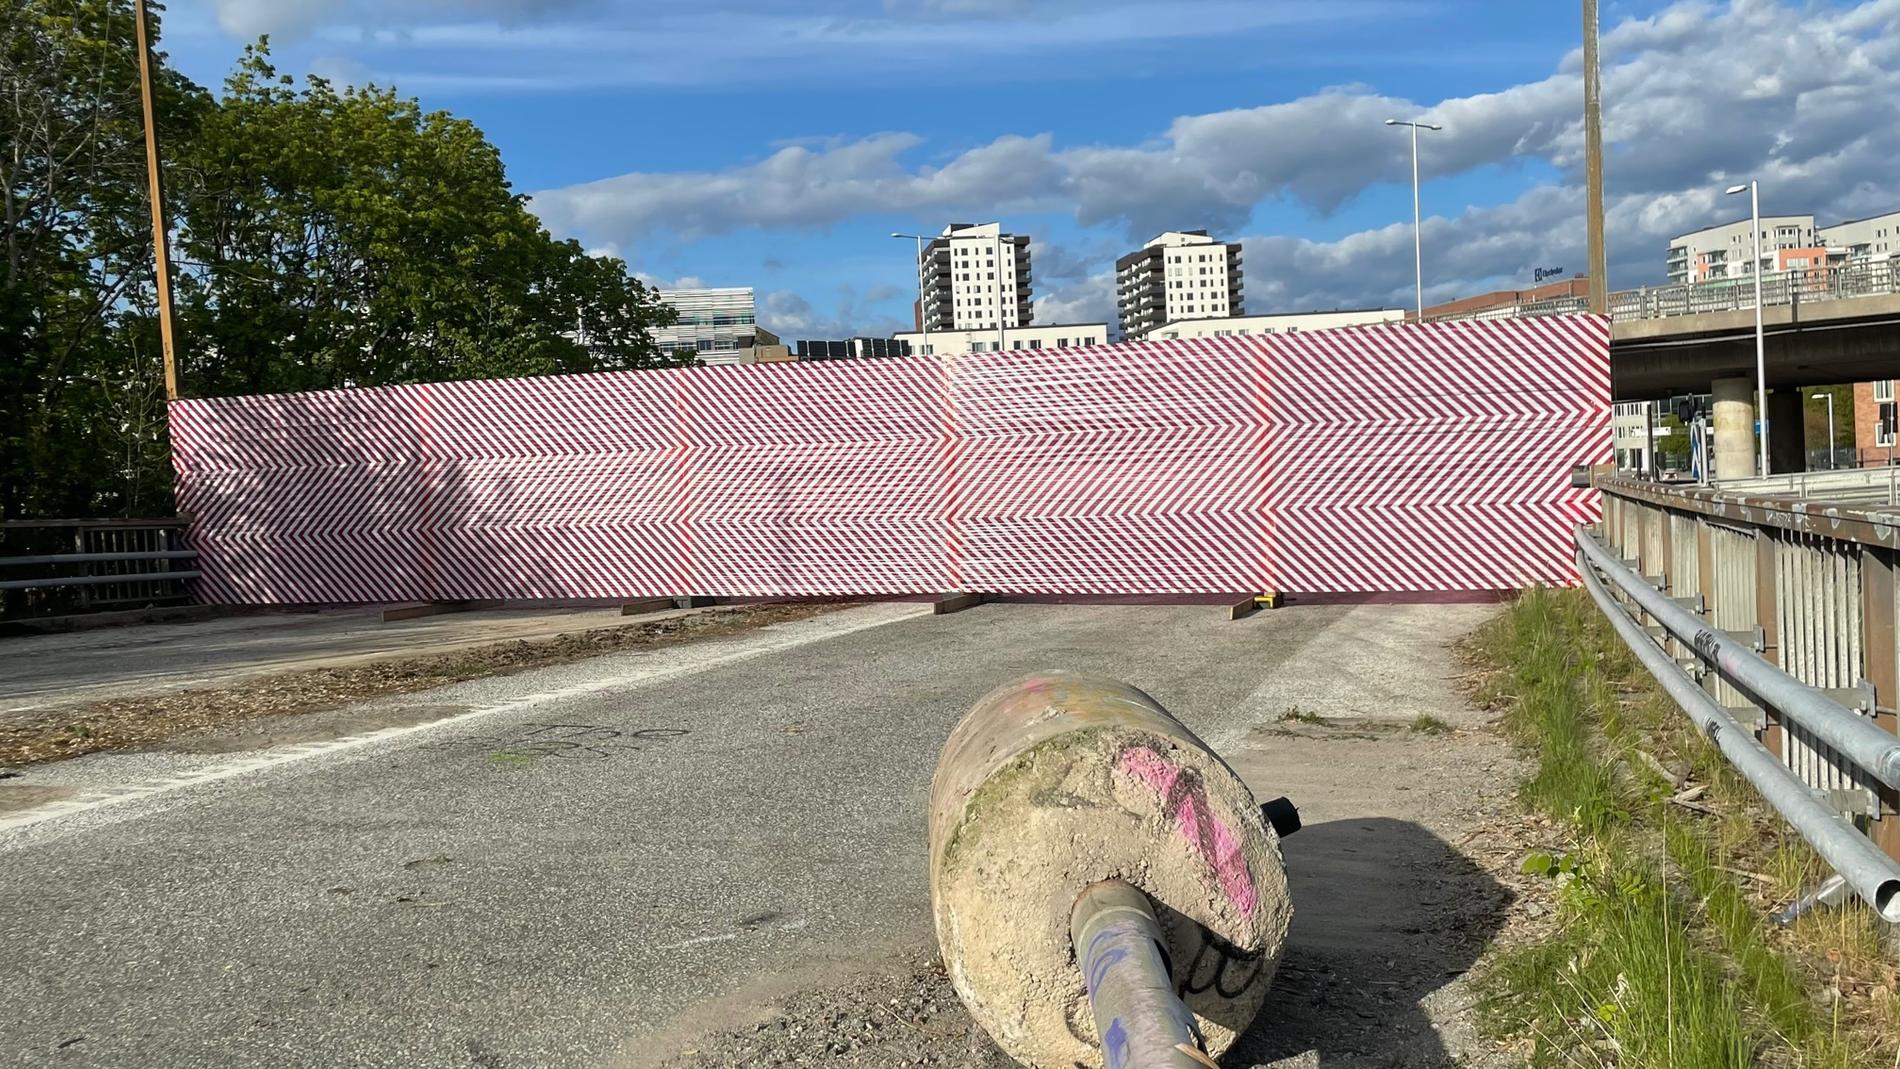 AKAY/OLABO: ”Avspärrning”. Rödvit avspärrningstejp skär av den nedre änden av rampen på utställningen ”Avfart” i Stockholm.